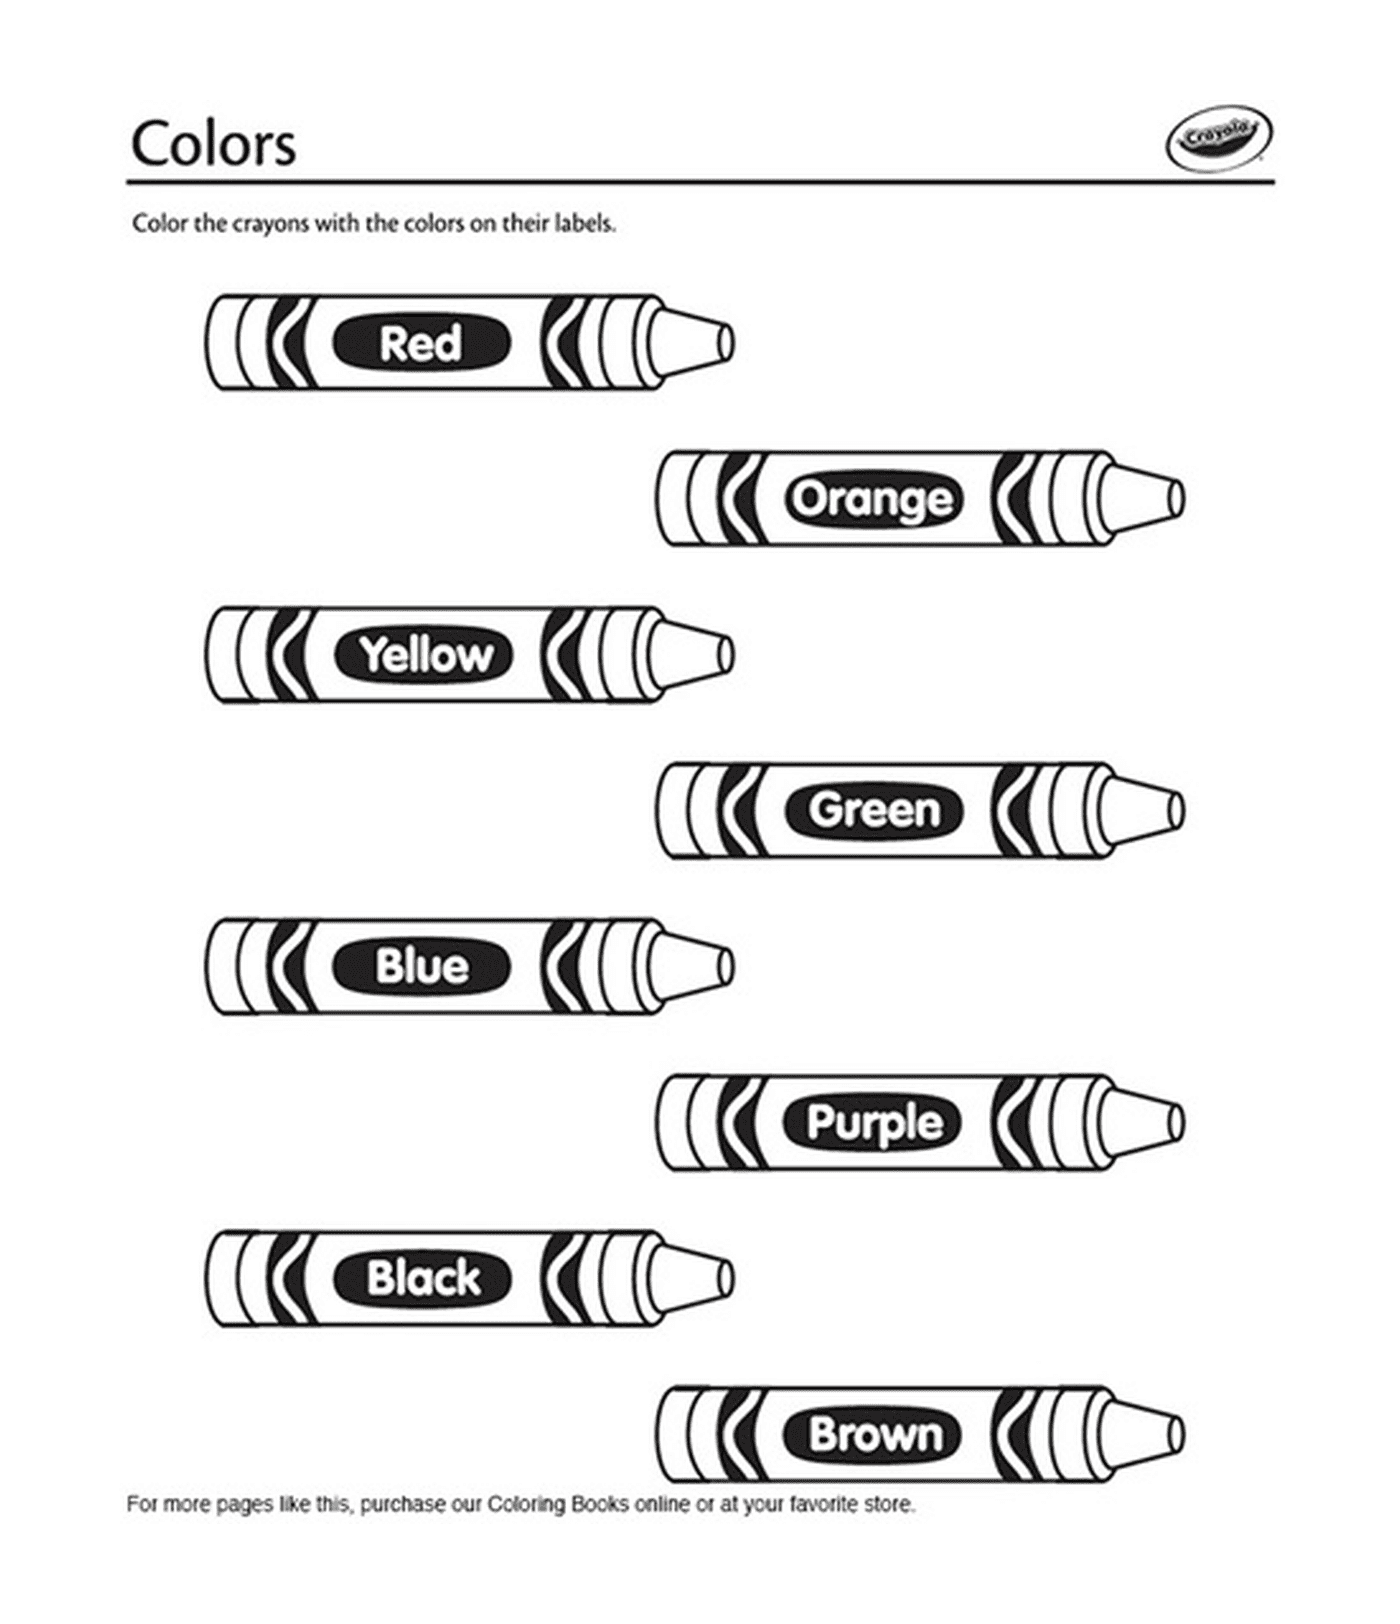  Цветные карандаши на английском языке: Crayola 